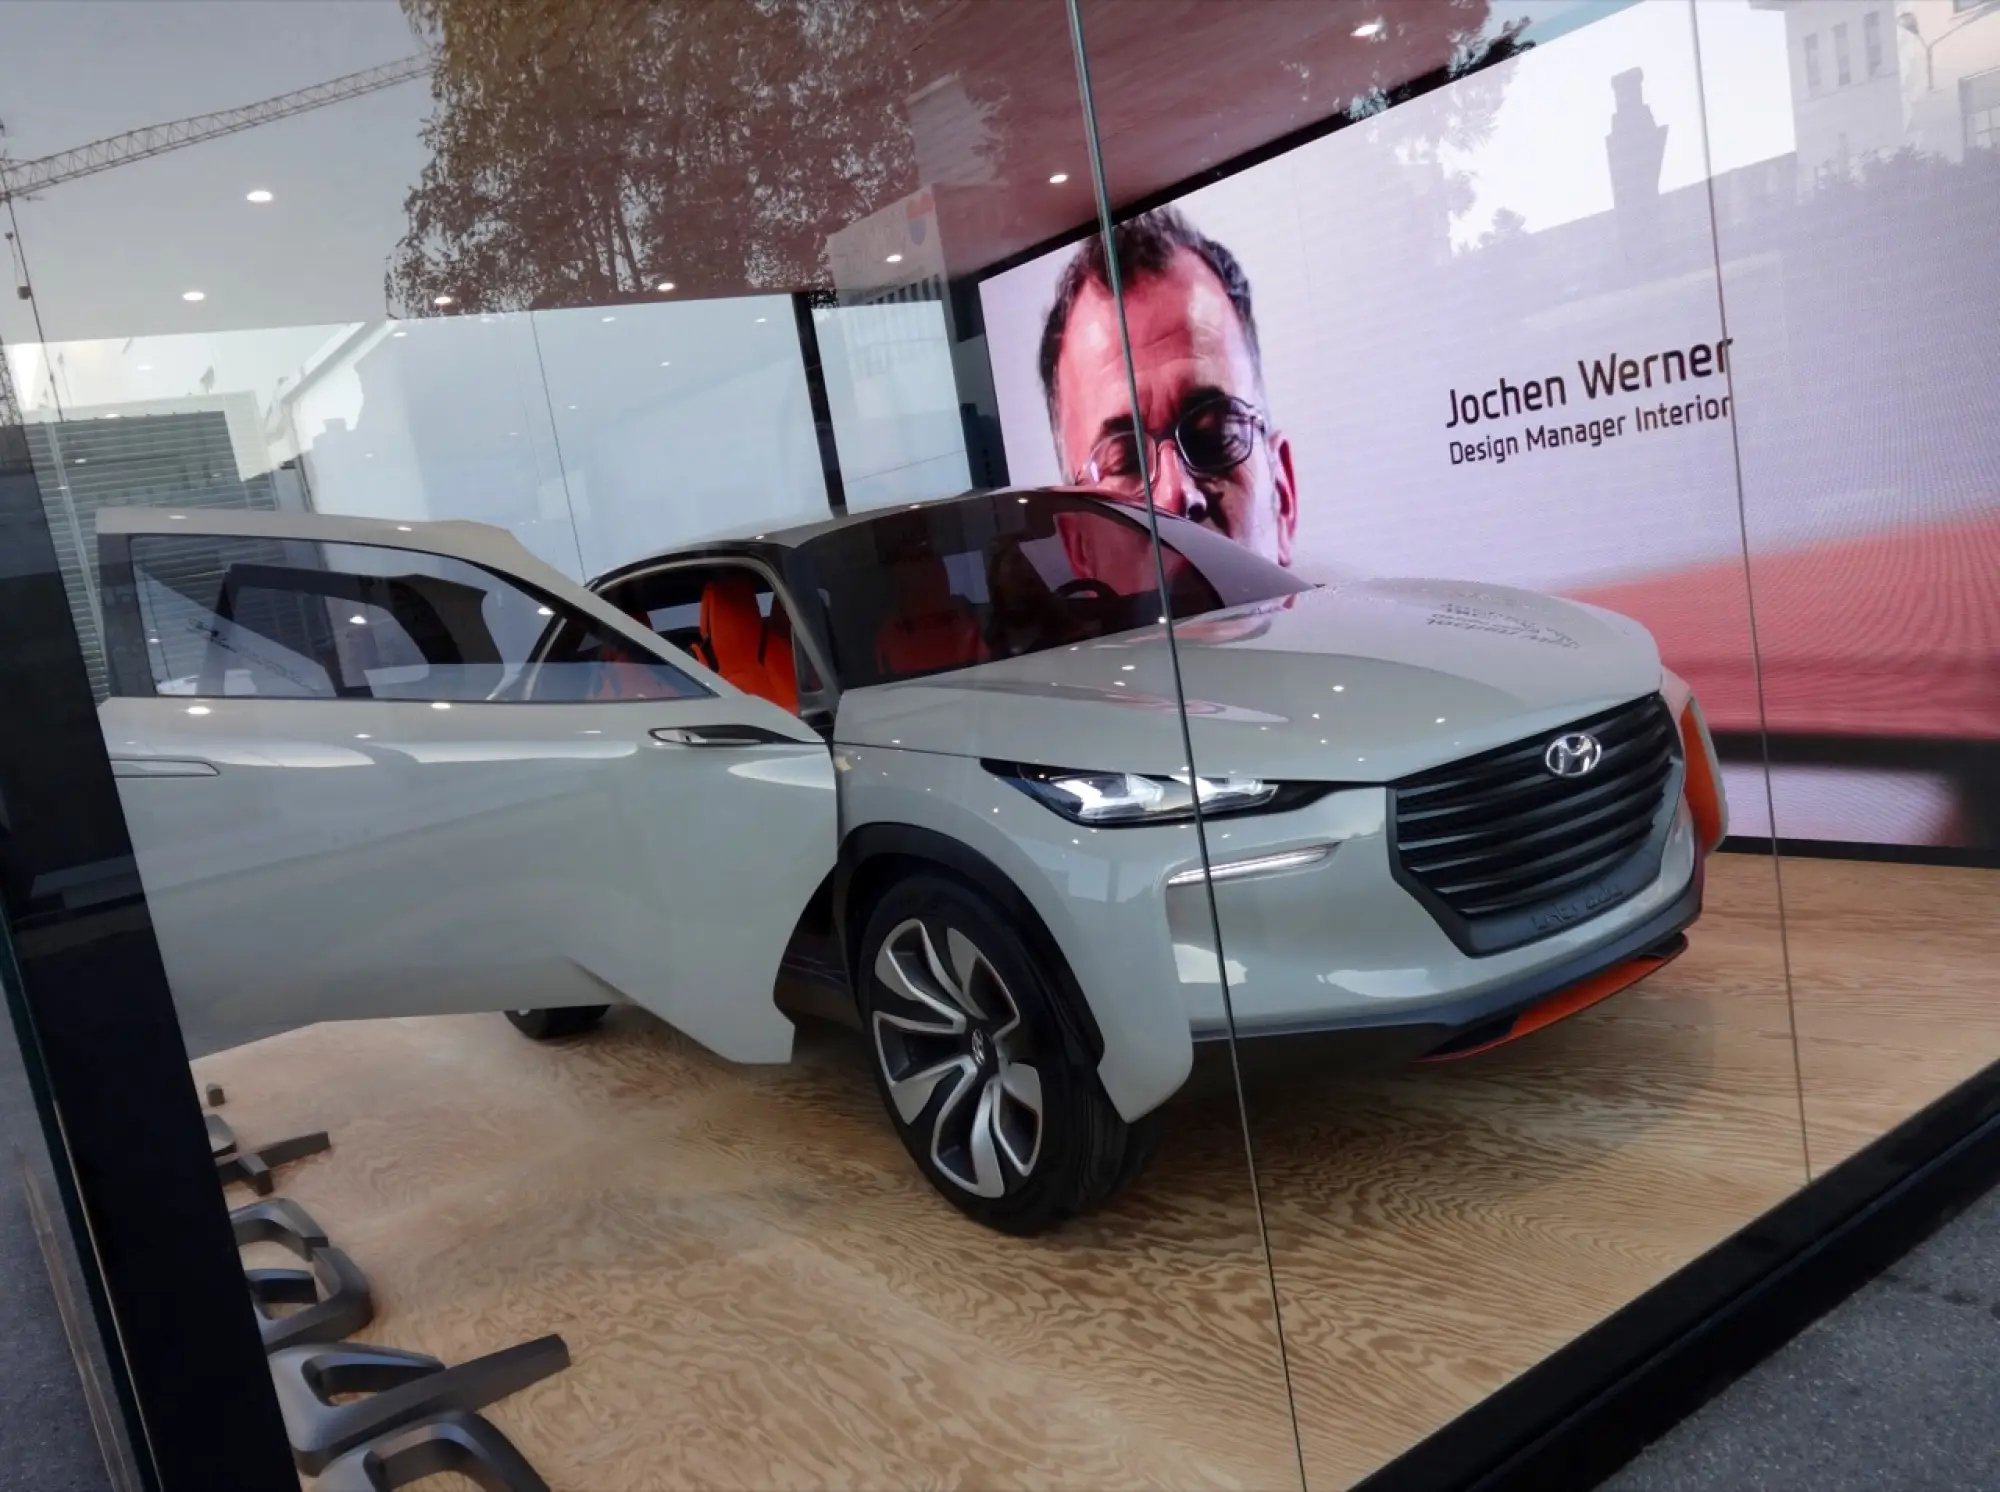 Hyundai - Milano Design Week 2015 - 2